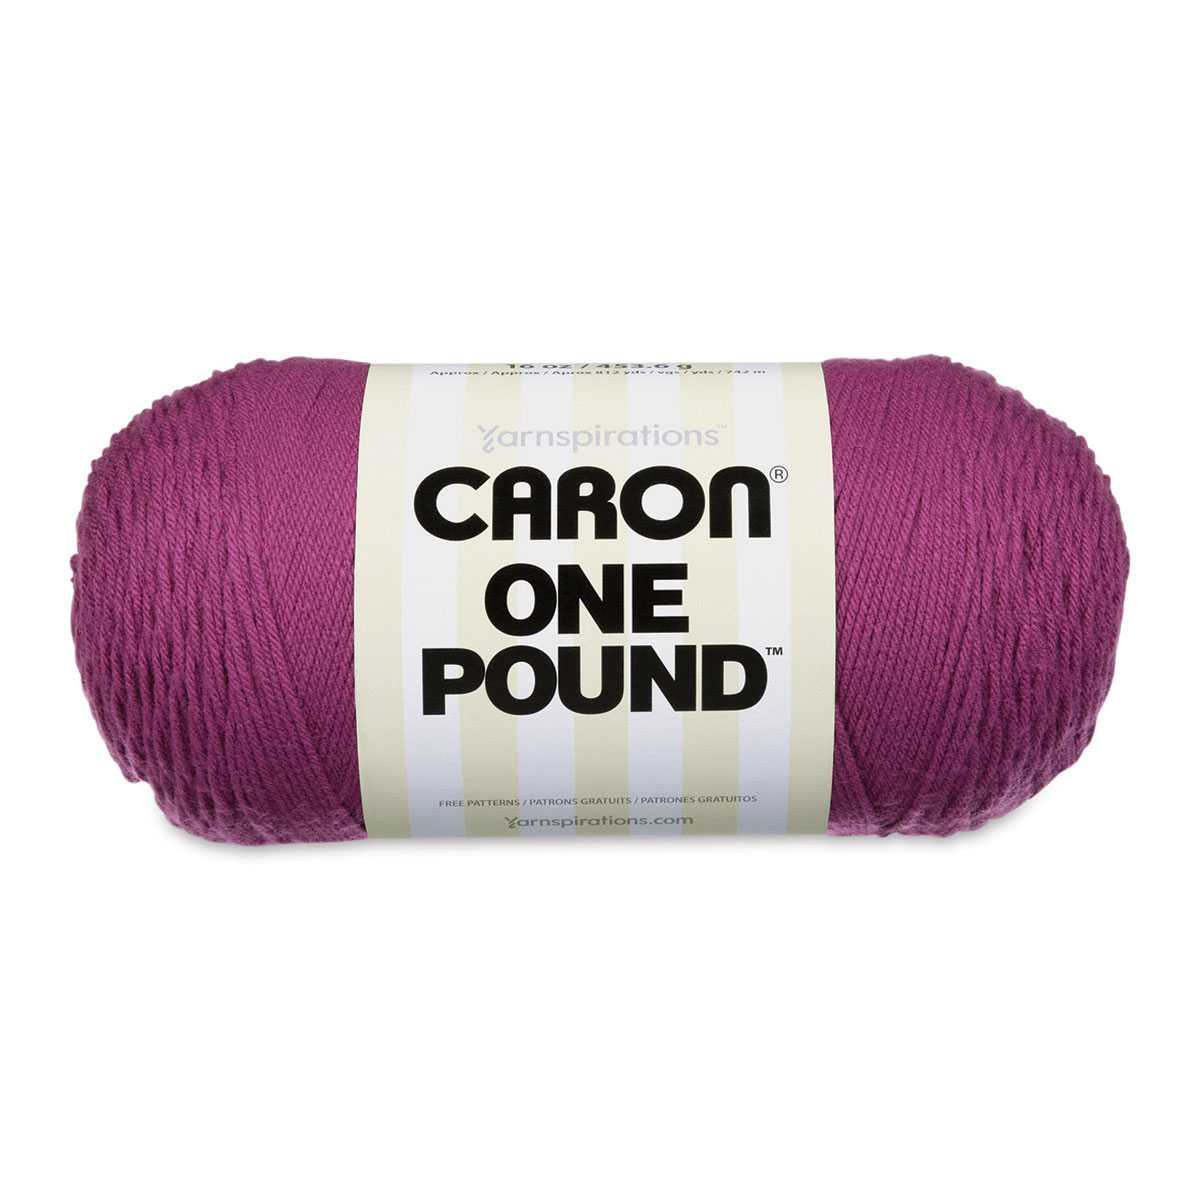 Caron One Pound Yarn - Soft Pink 10513 - 812 yards, 16 oz - Tony's  Restaurant in Alton, IL